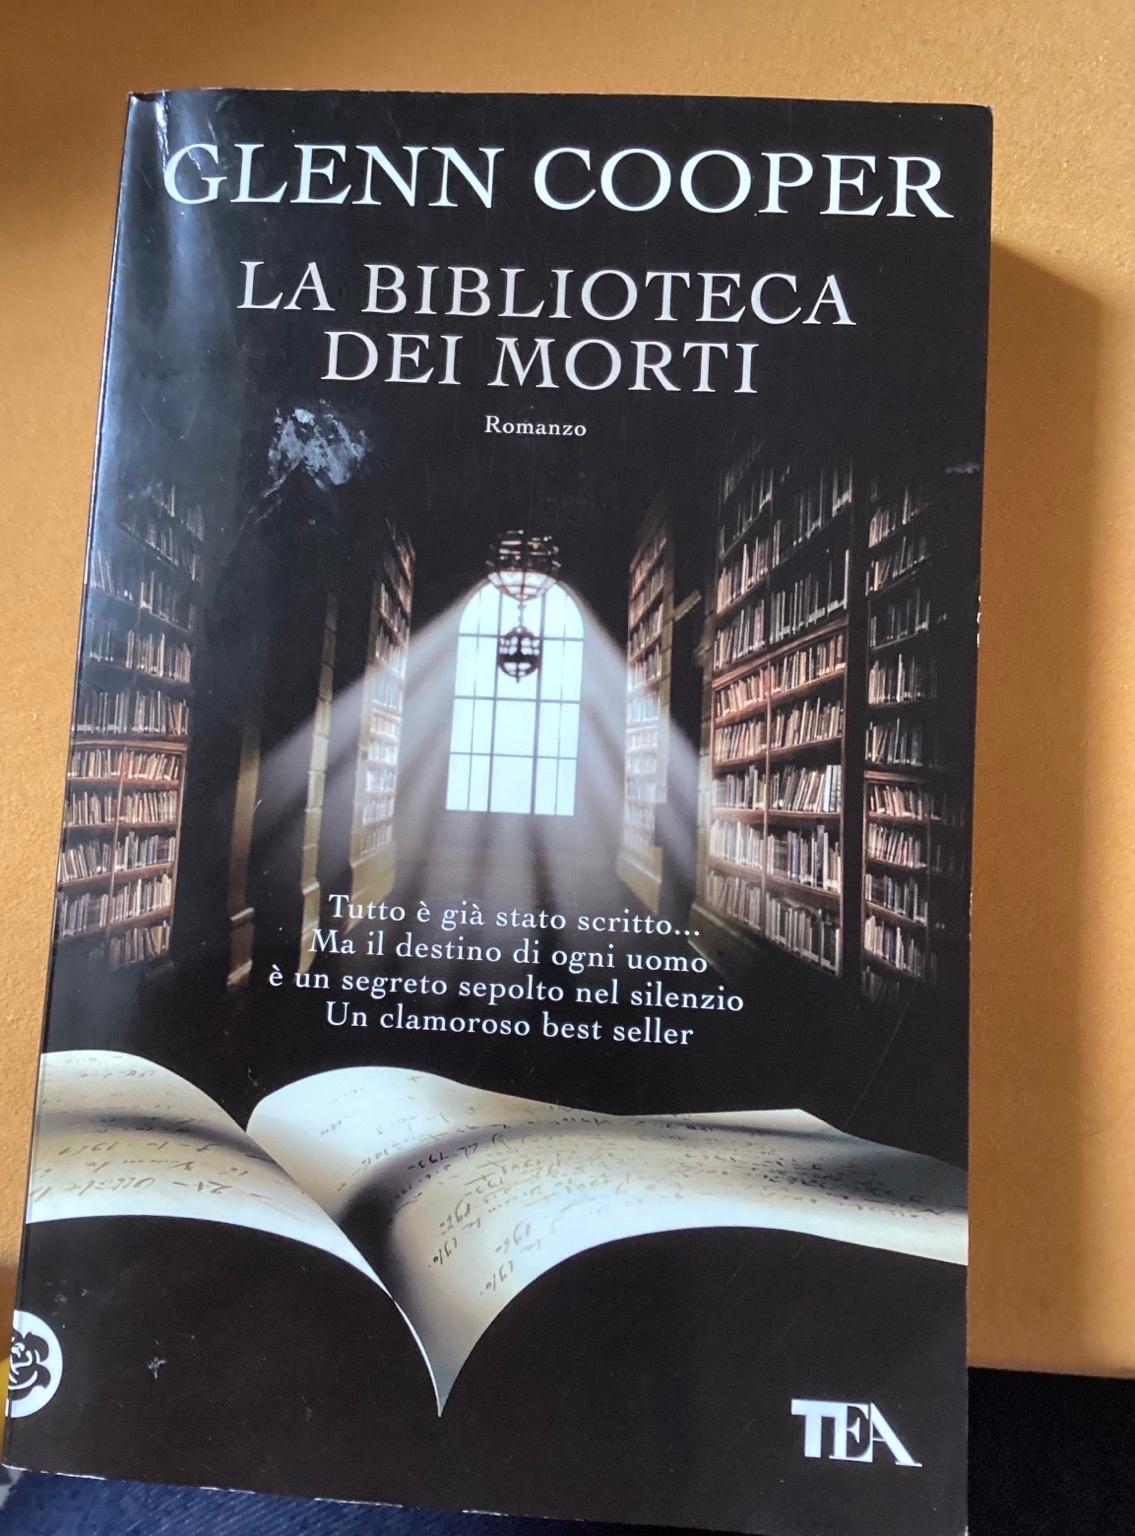 Libro in italiano”La biblioteca dei morti” in 10133 Turin for €5.00 for  sale